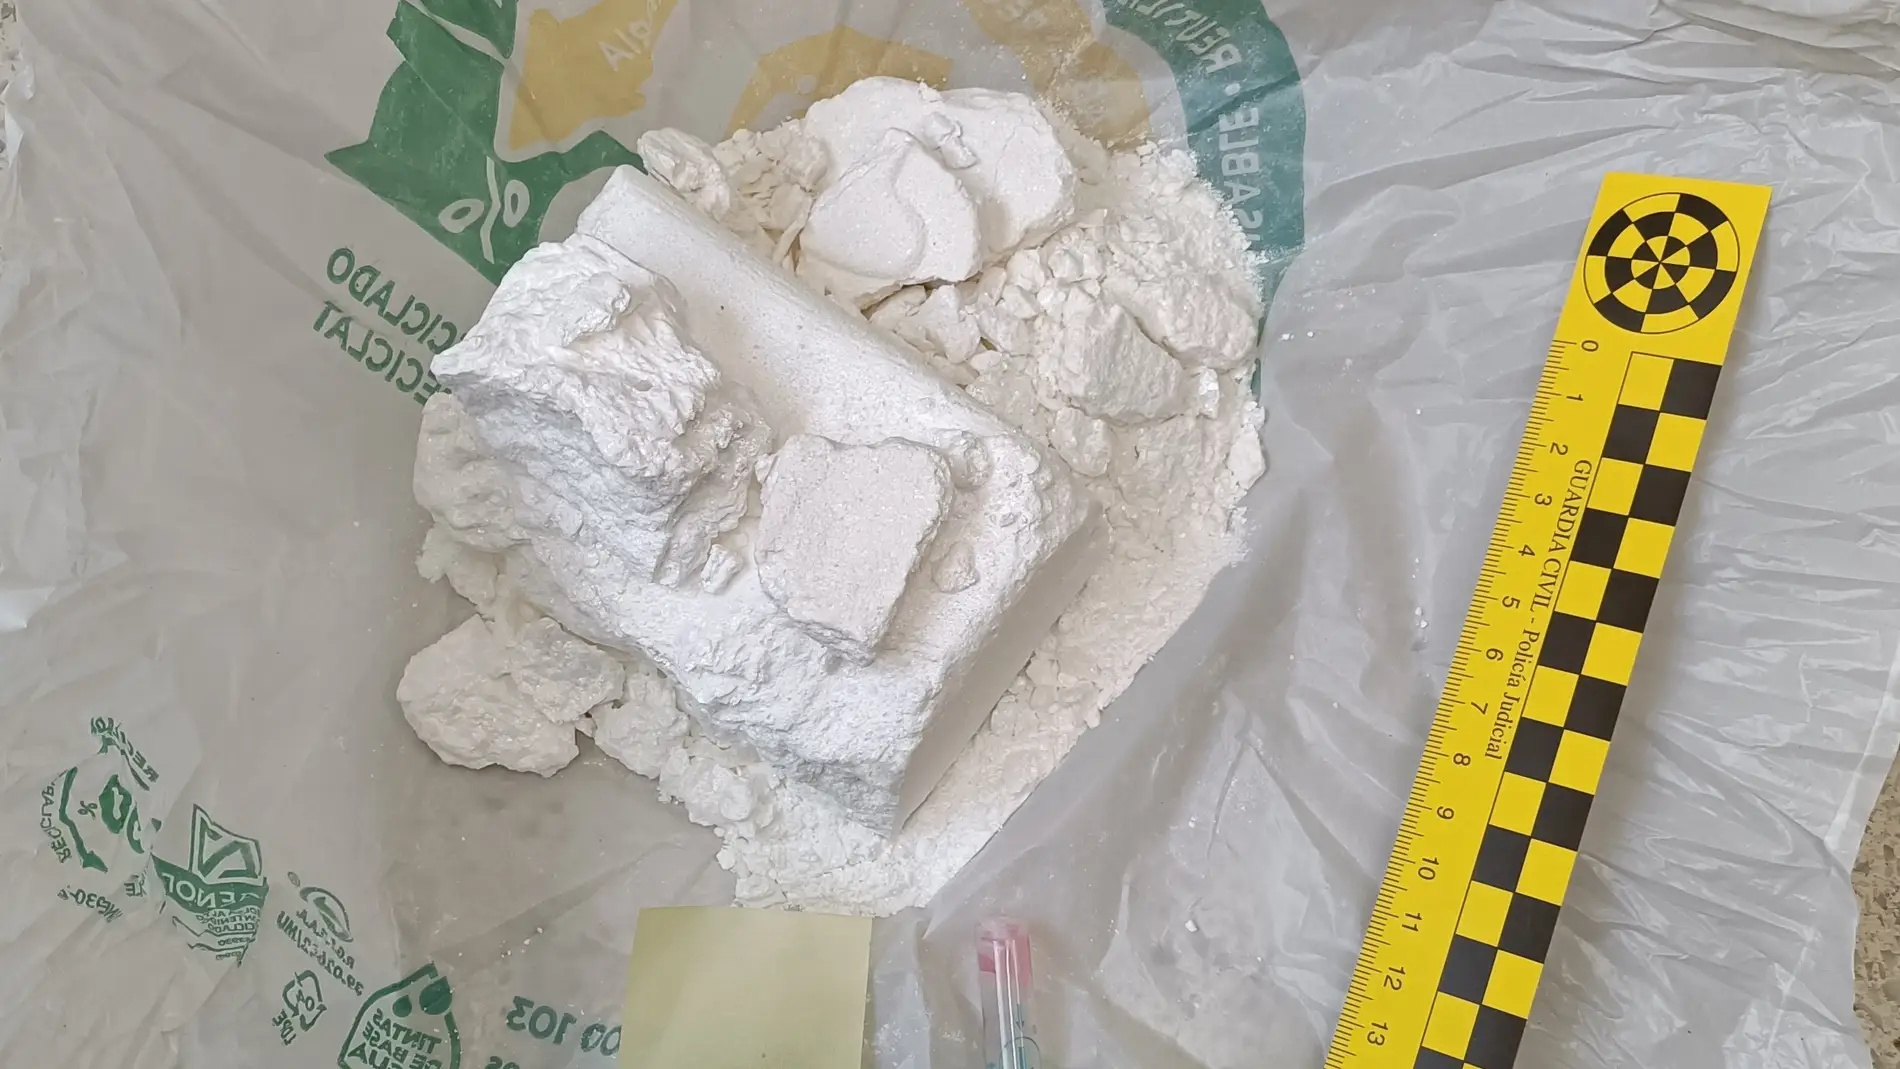 Dos detenidos en Mieres por transportar cocaína